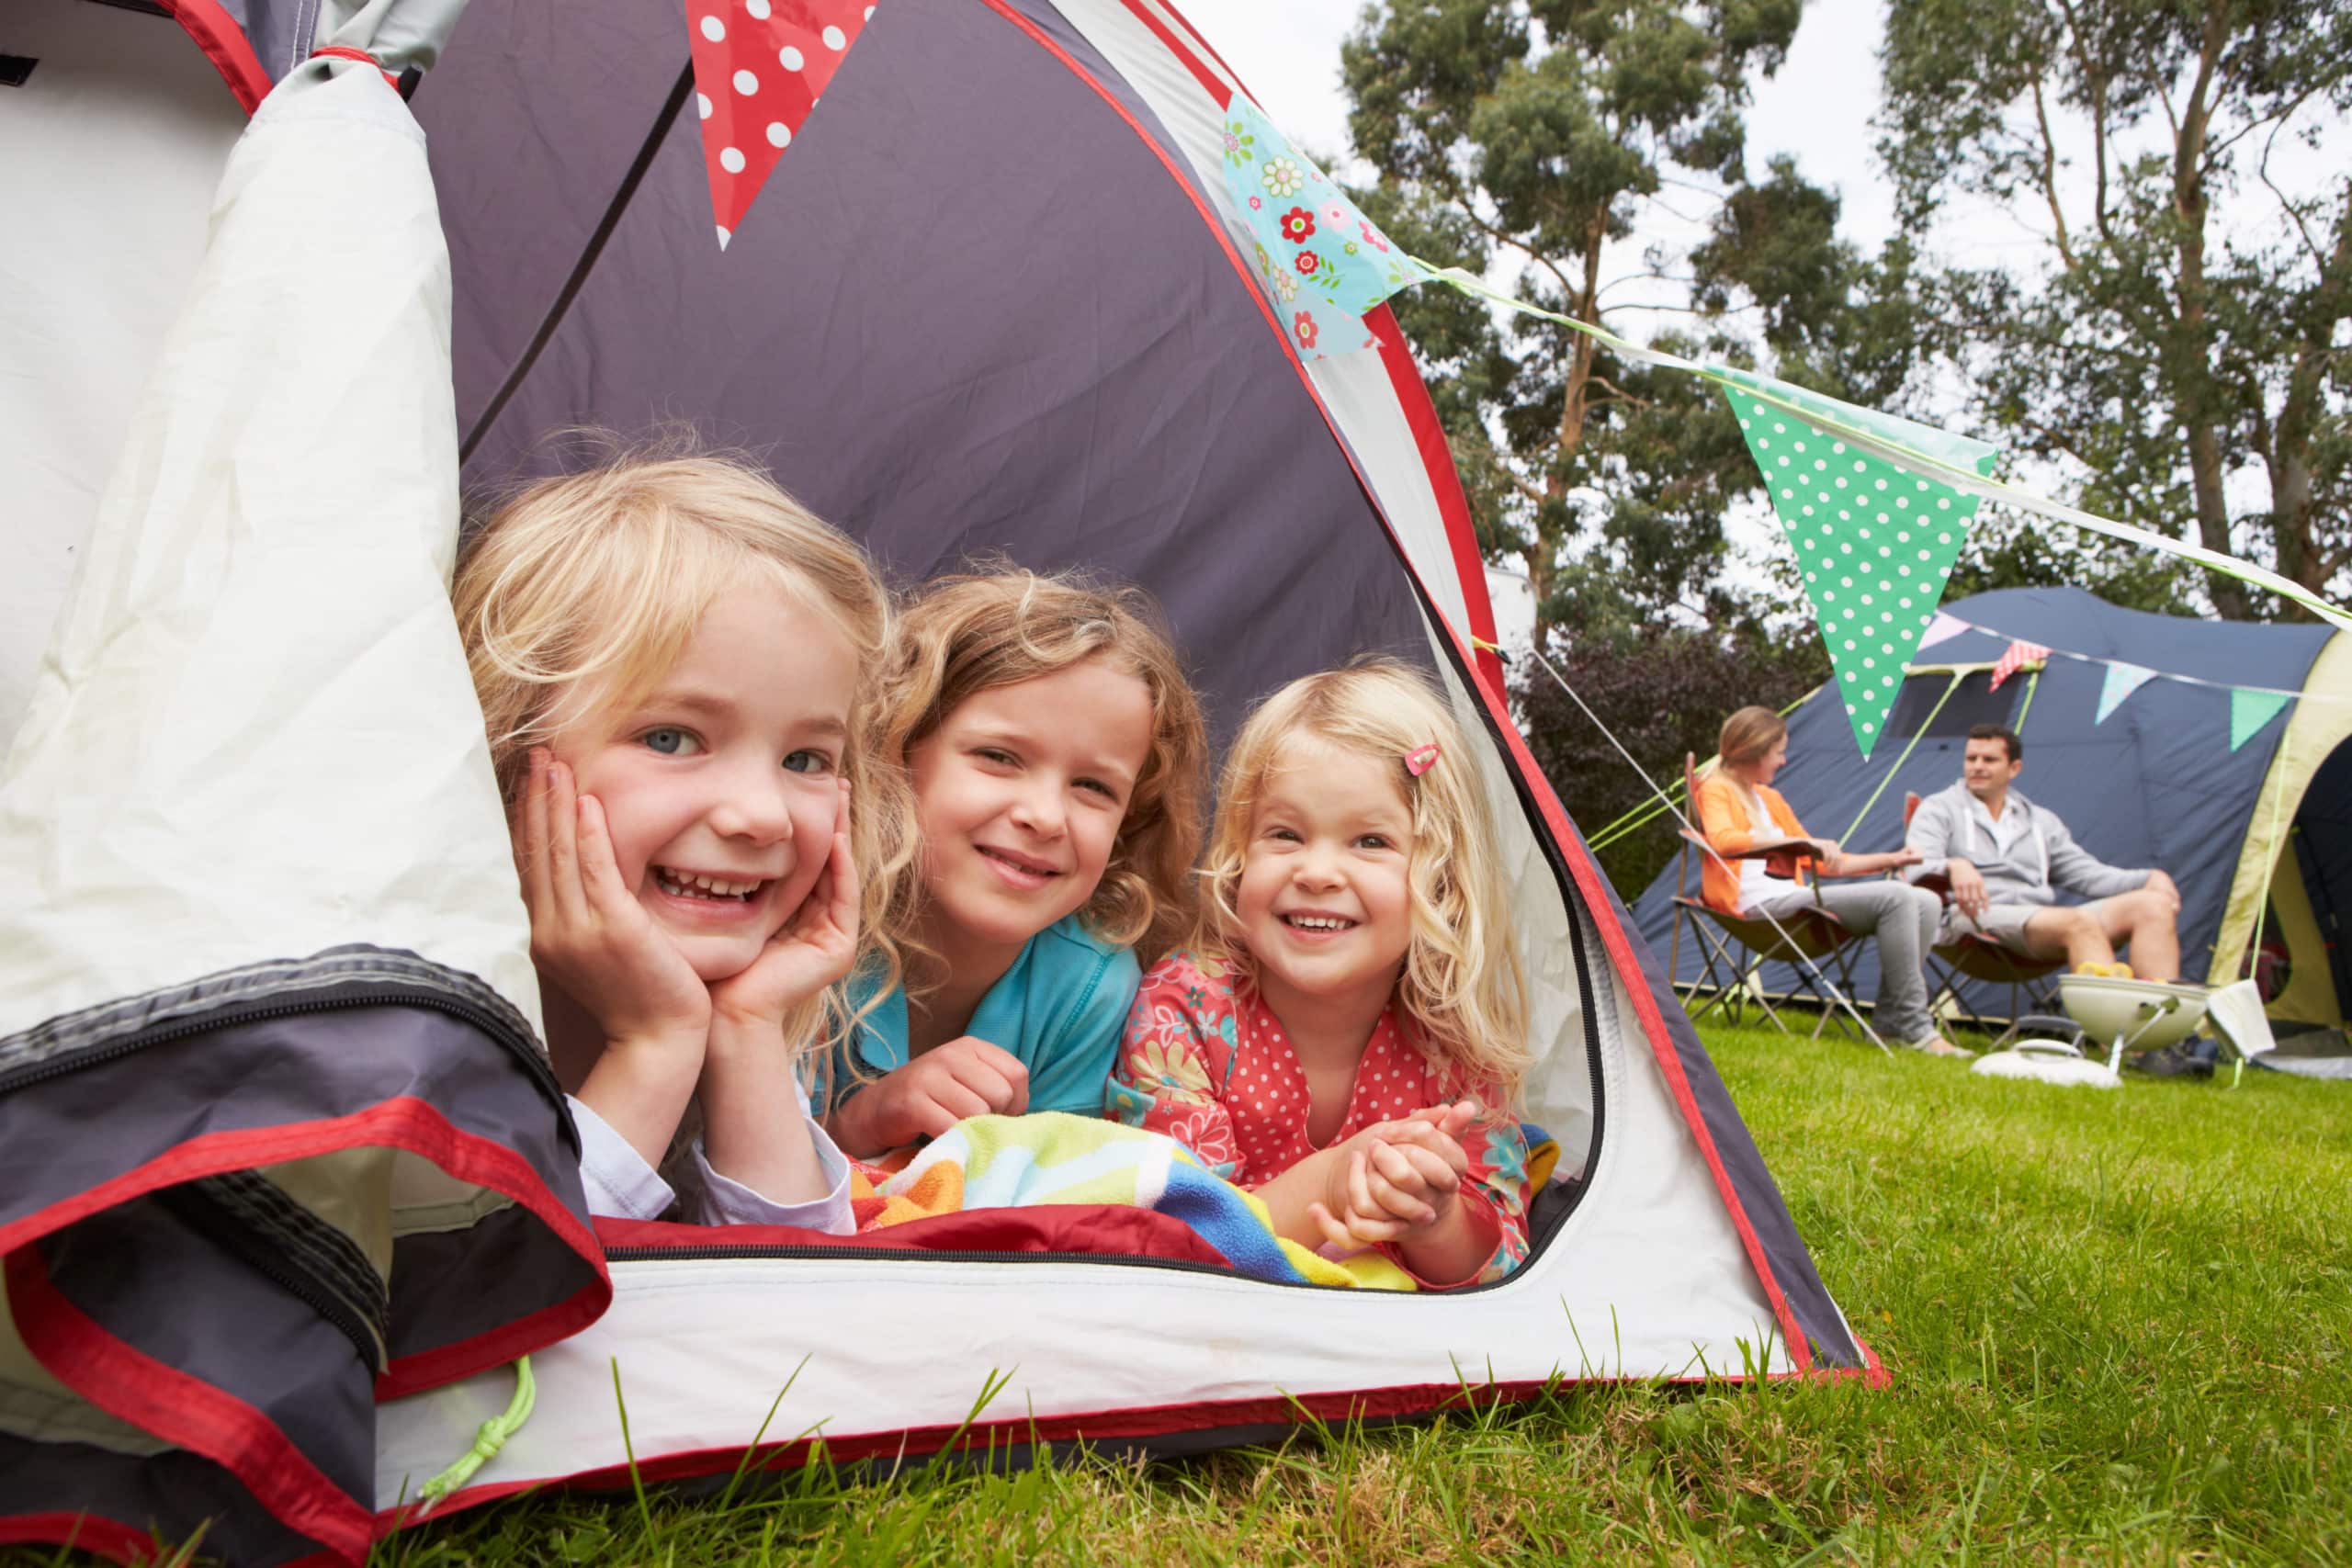 petites filles dans une tente de camping, tourisme et réalité virtuelle